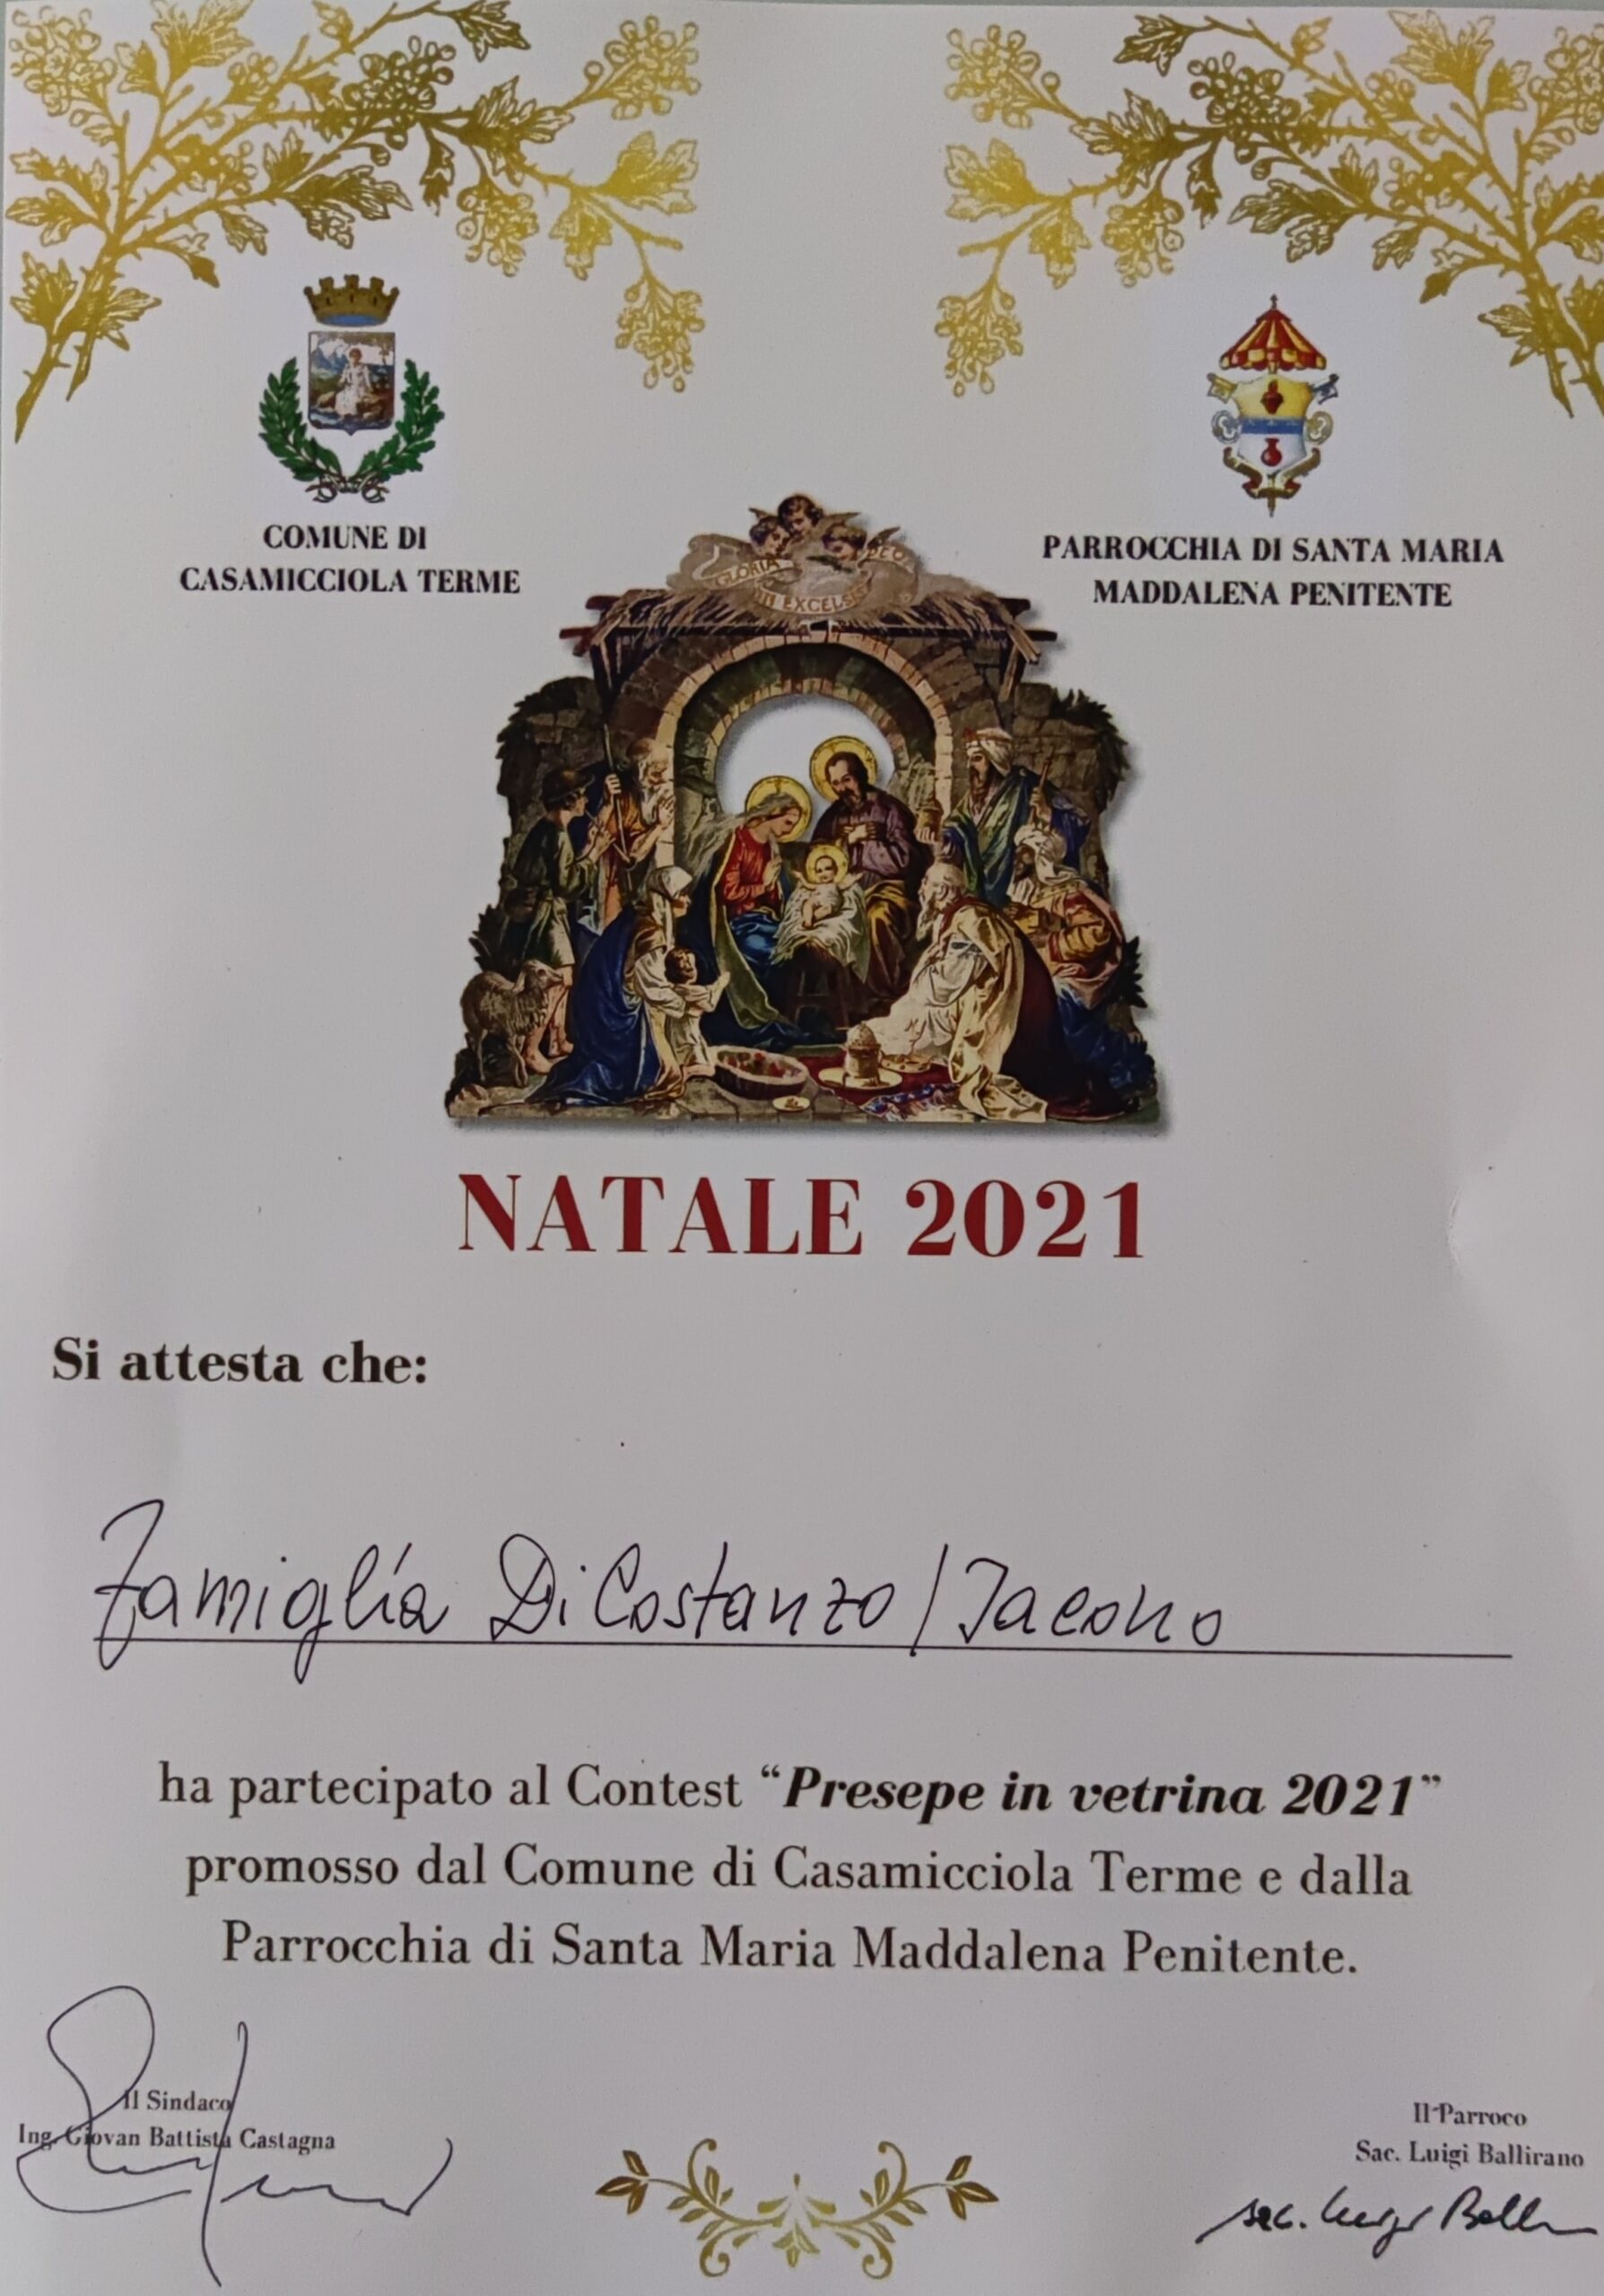 Premio Presepe 2021 Casa Di Costanzo/Iacono